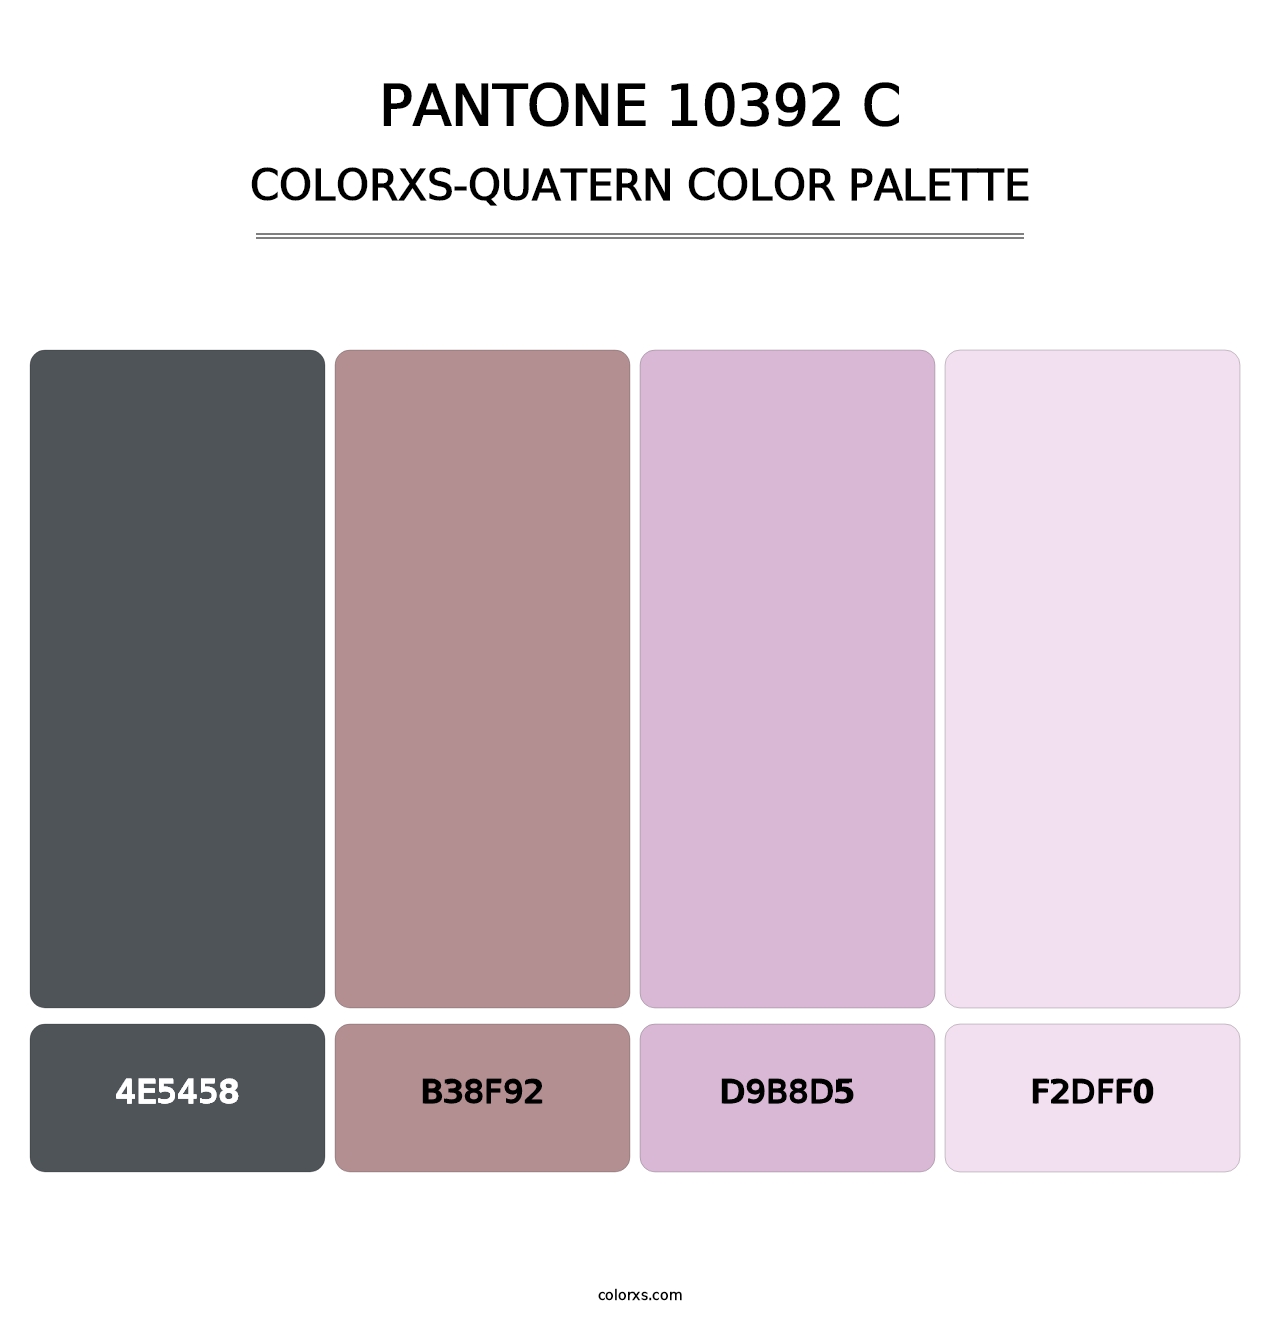 PANTONE 10392 C - Colorxs Quatern Palette